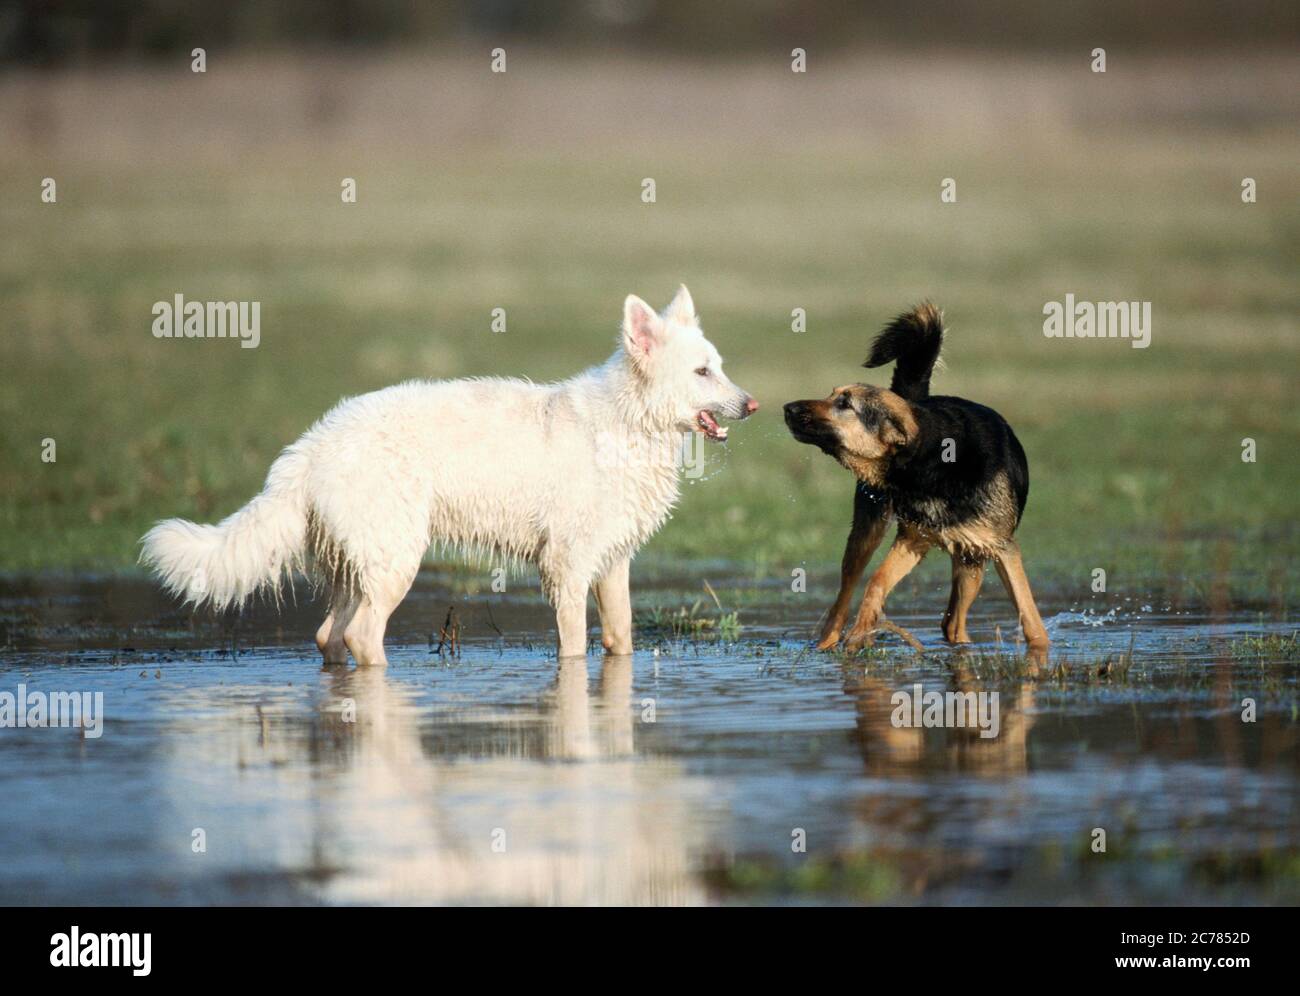 Berger blanc Suisse, Berger blanc suisse blanc et chien mixte. Deux chiens adultes jouant dans l'eau. Allemagne Banque D'Images